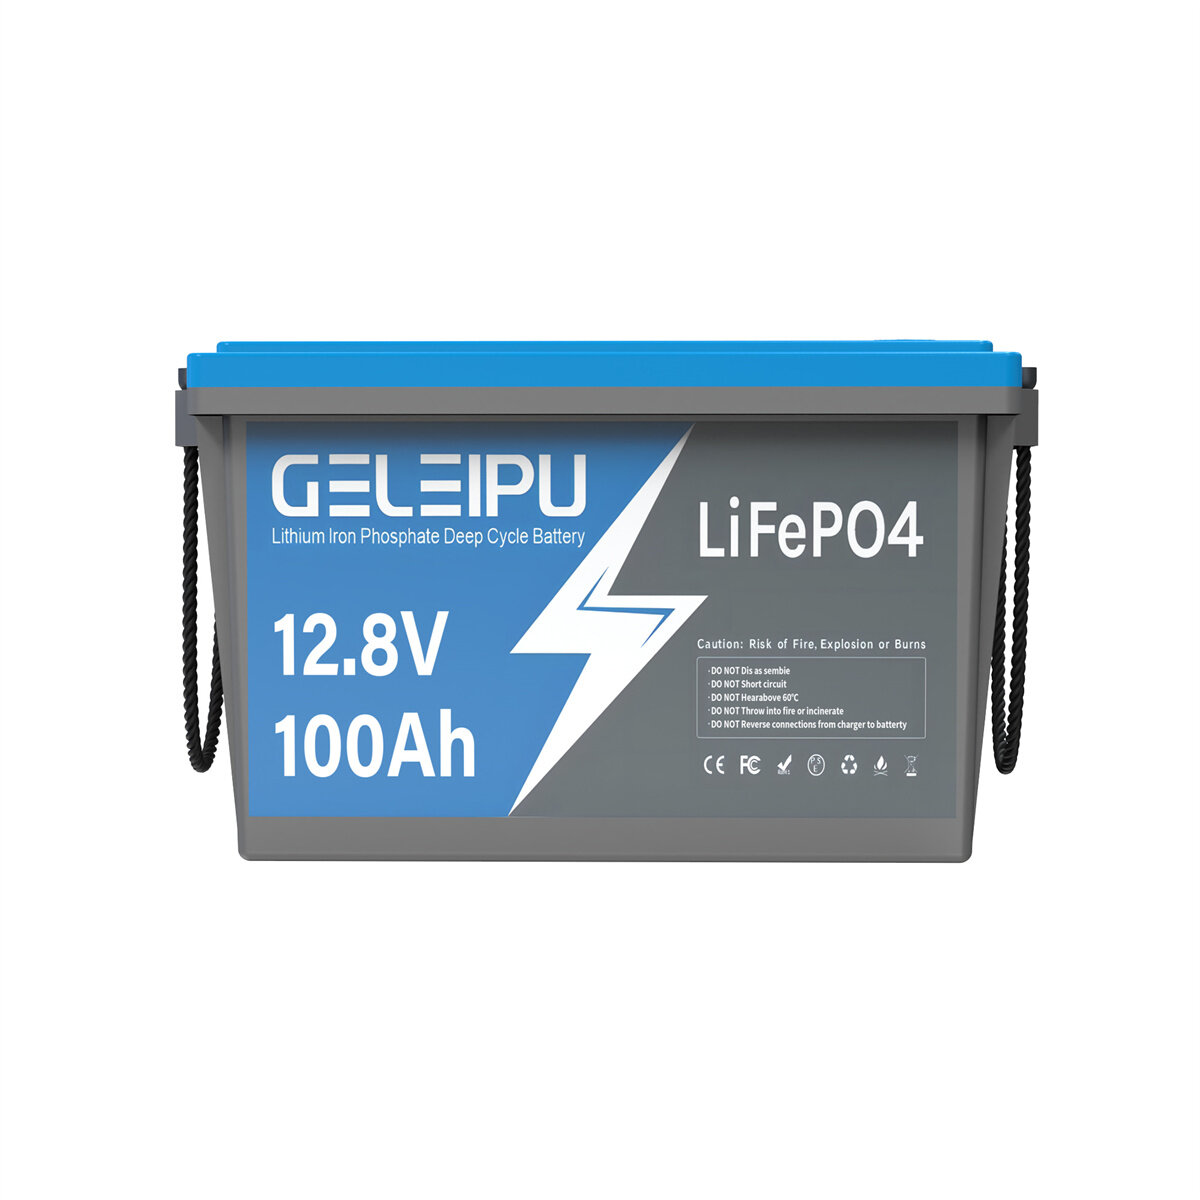 [EU Direct] GELEIPU 12V 12.8V 100Ah LiFePO4 Batarya, 1280Wh Şarj Edilebilir Lityum Batarya, Dahili 100A BMS ile 4000-15000 Döngüye Sahip, Trol Motor Güneş Sistemi İçin Mükemmel